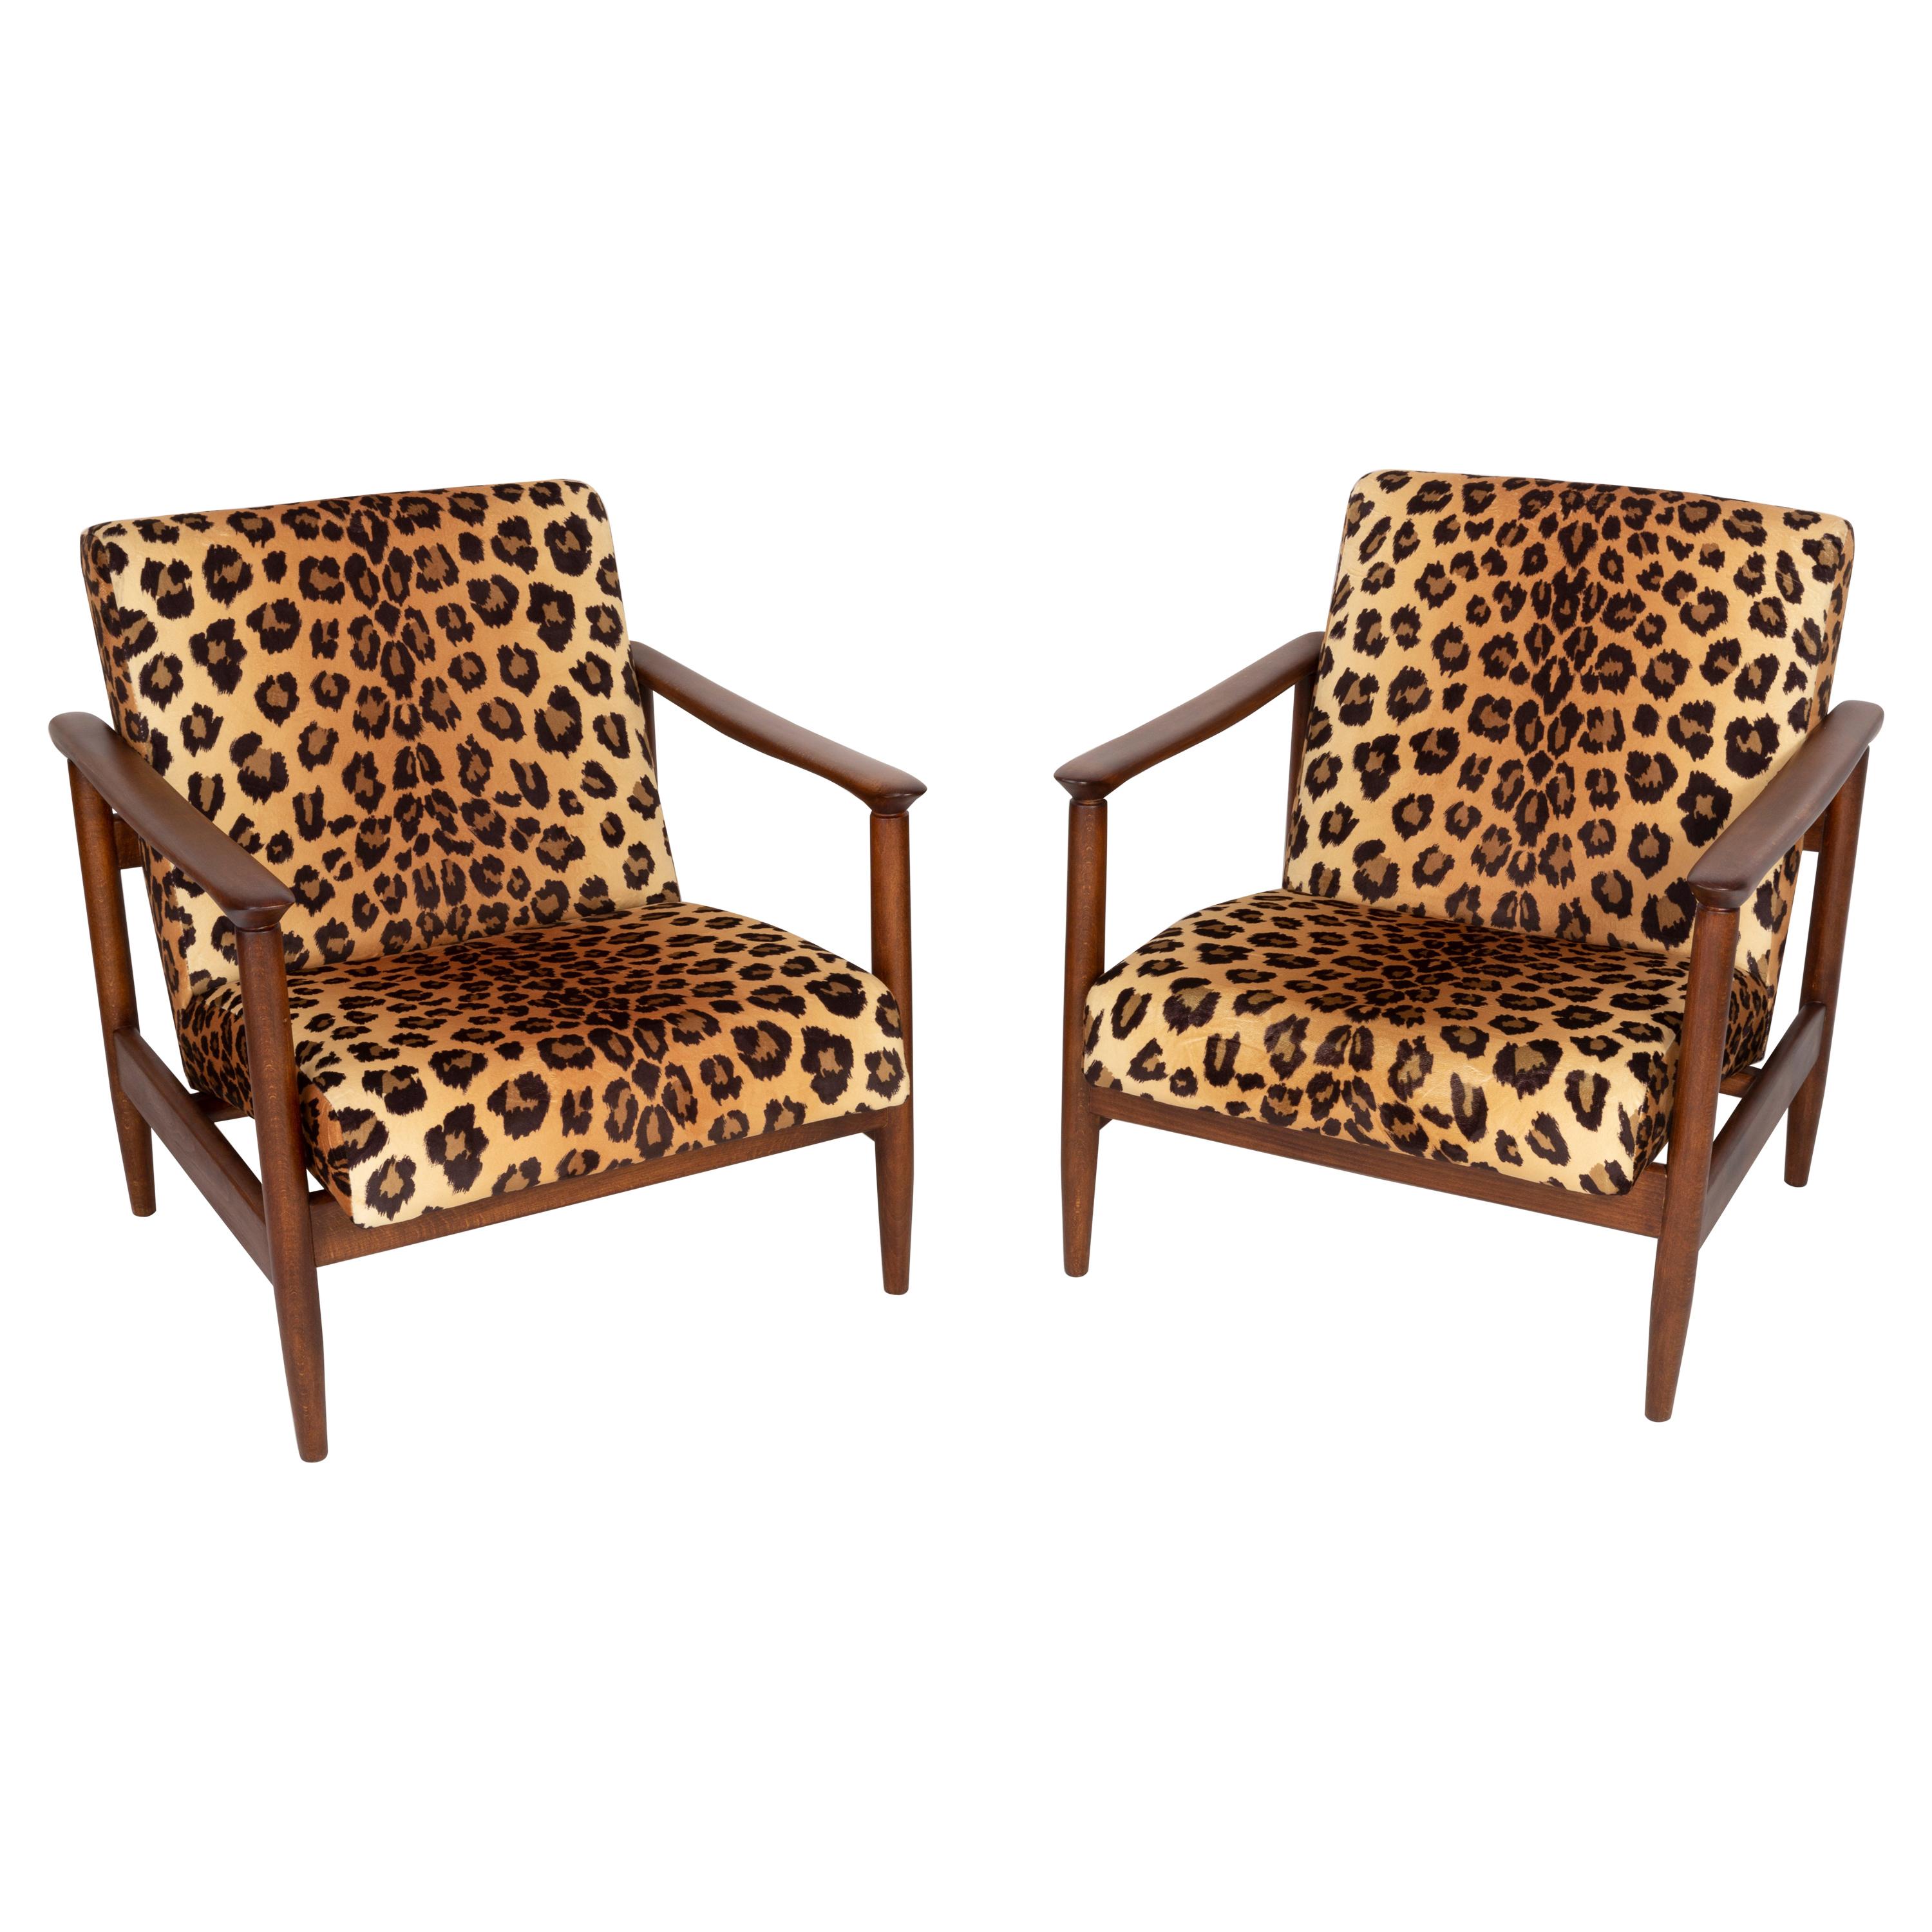 Zwei Sessel aus Samt mit Leopardenmuster, Hollywood Regency, Edmund Homa, 1960er Jahre, Polen